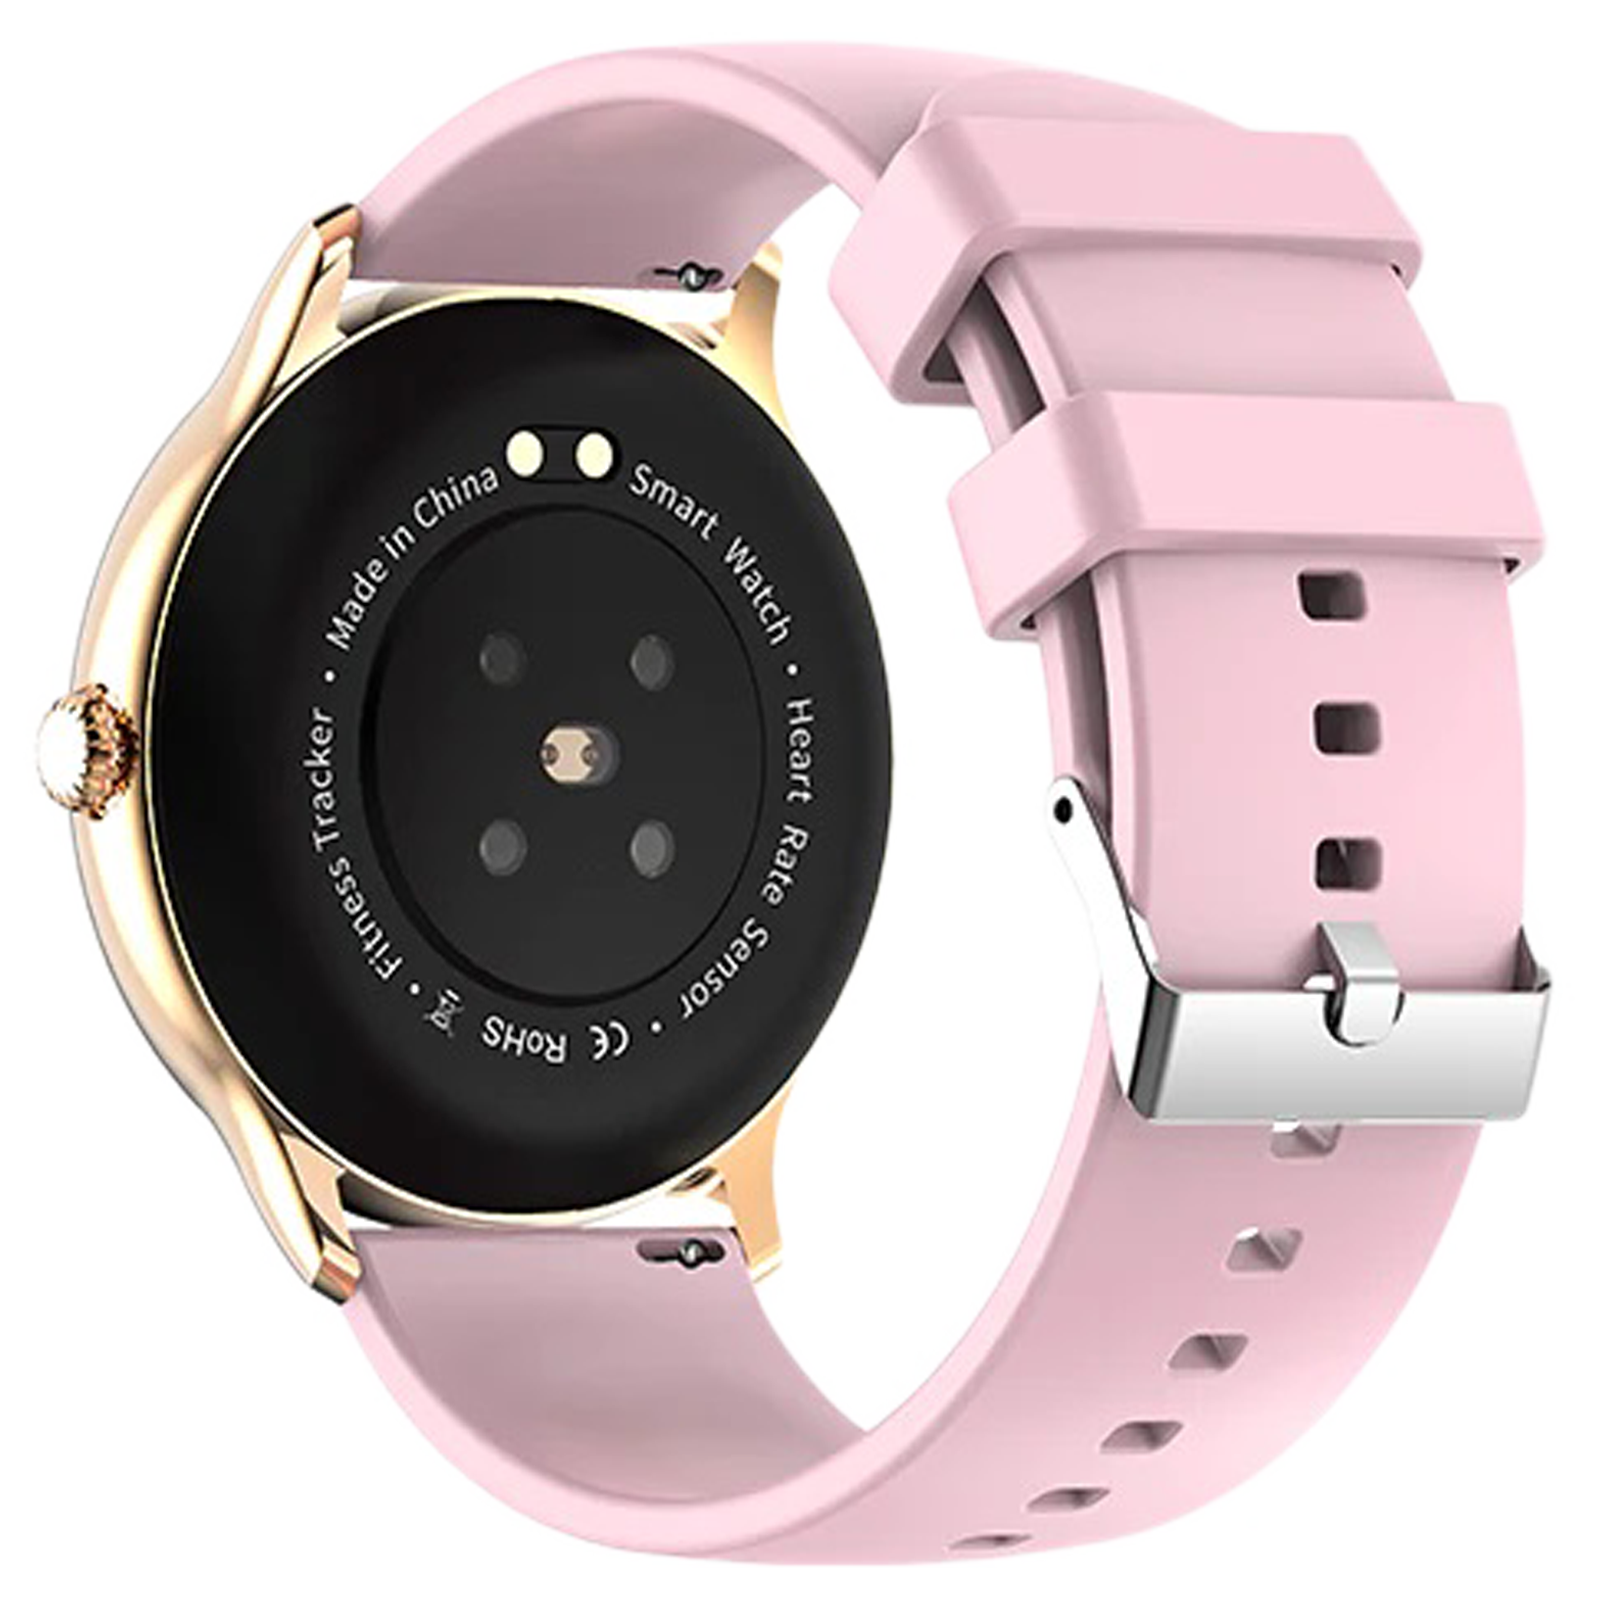 Fire-Boltt Hurricane Smartwatch BSW034-GOLDEN PINK - Kamal Watch Company